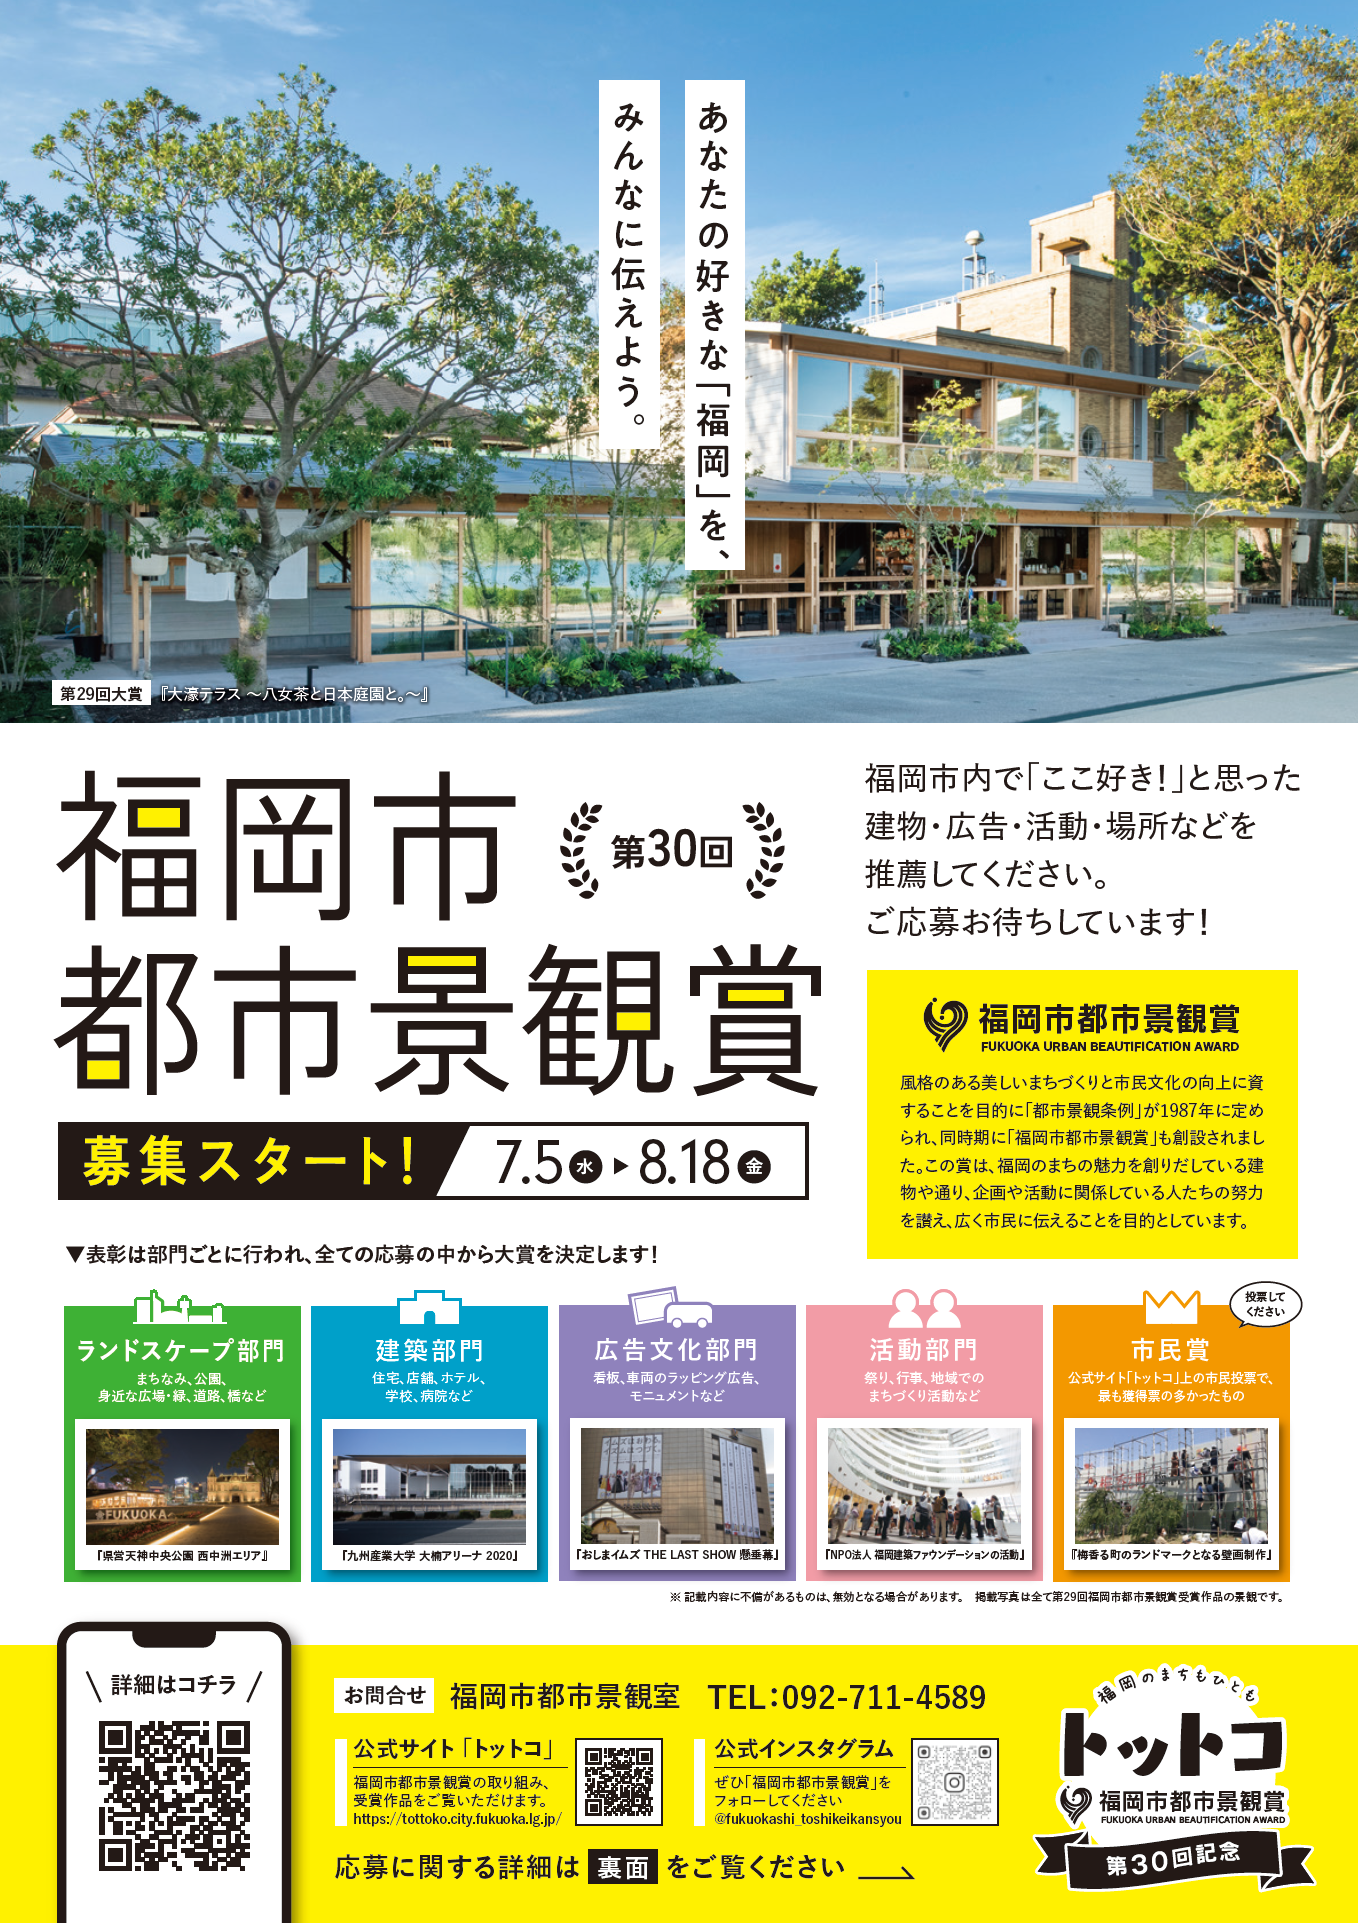 【受付終了】「第30回福岡市都市景観賞」募集についての画像1